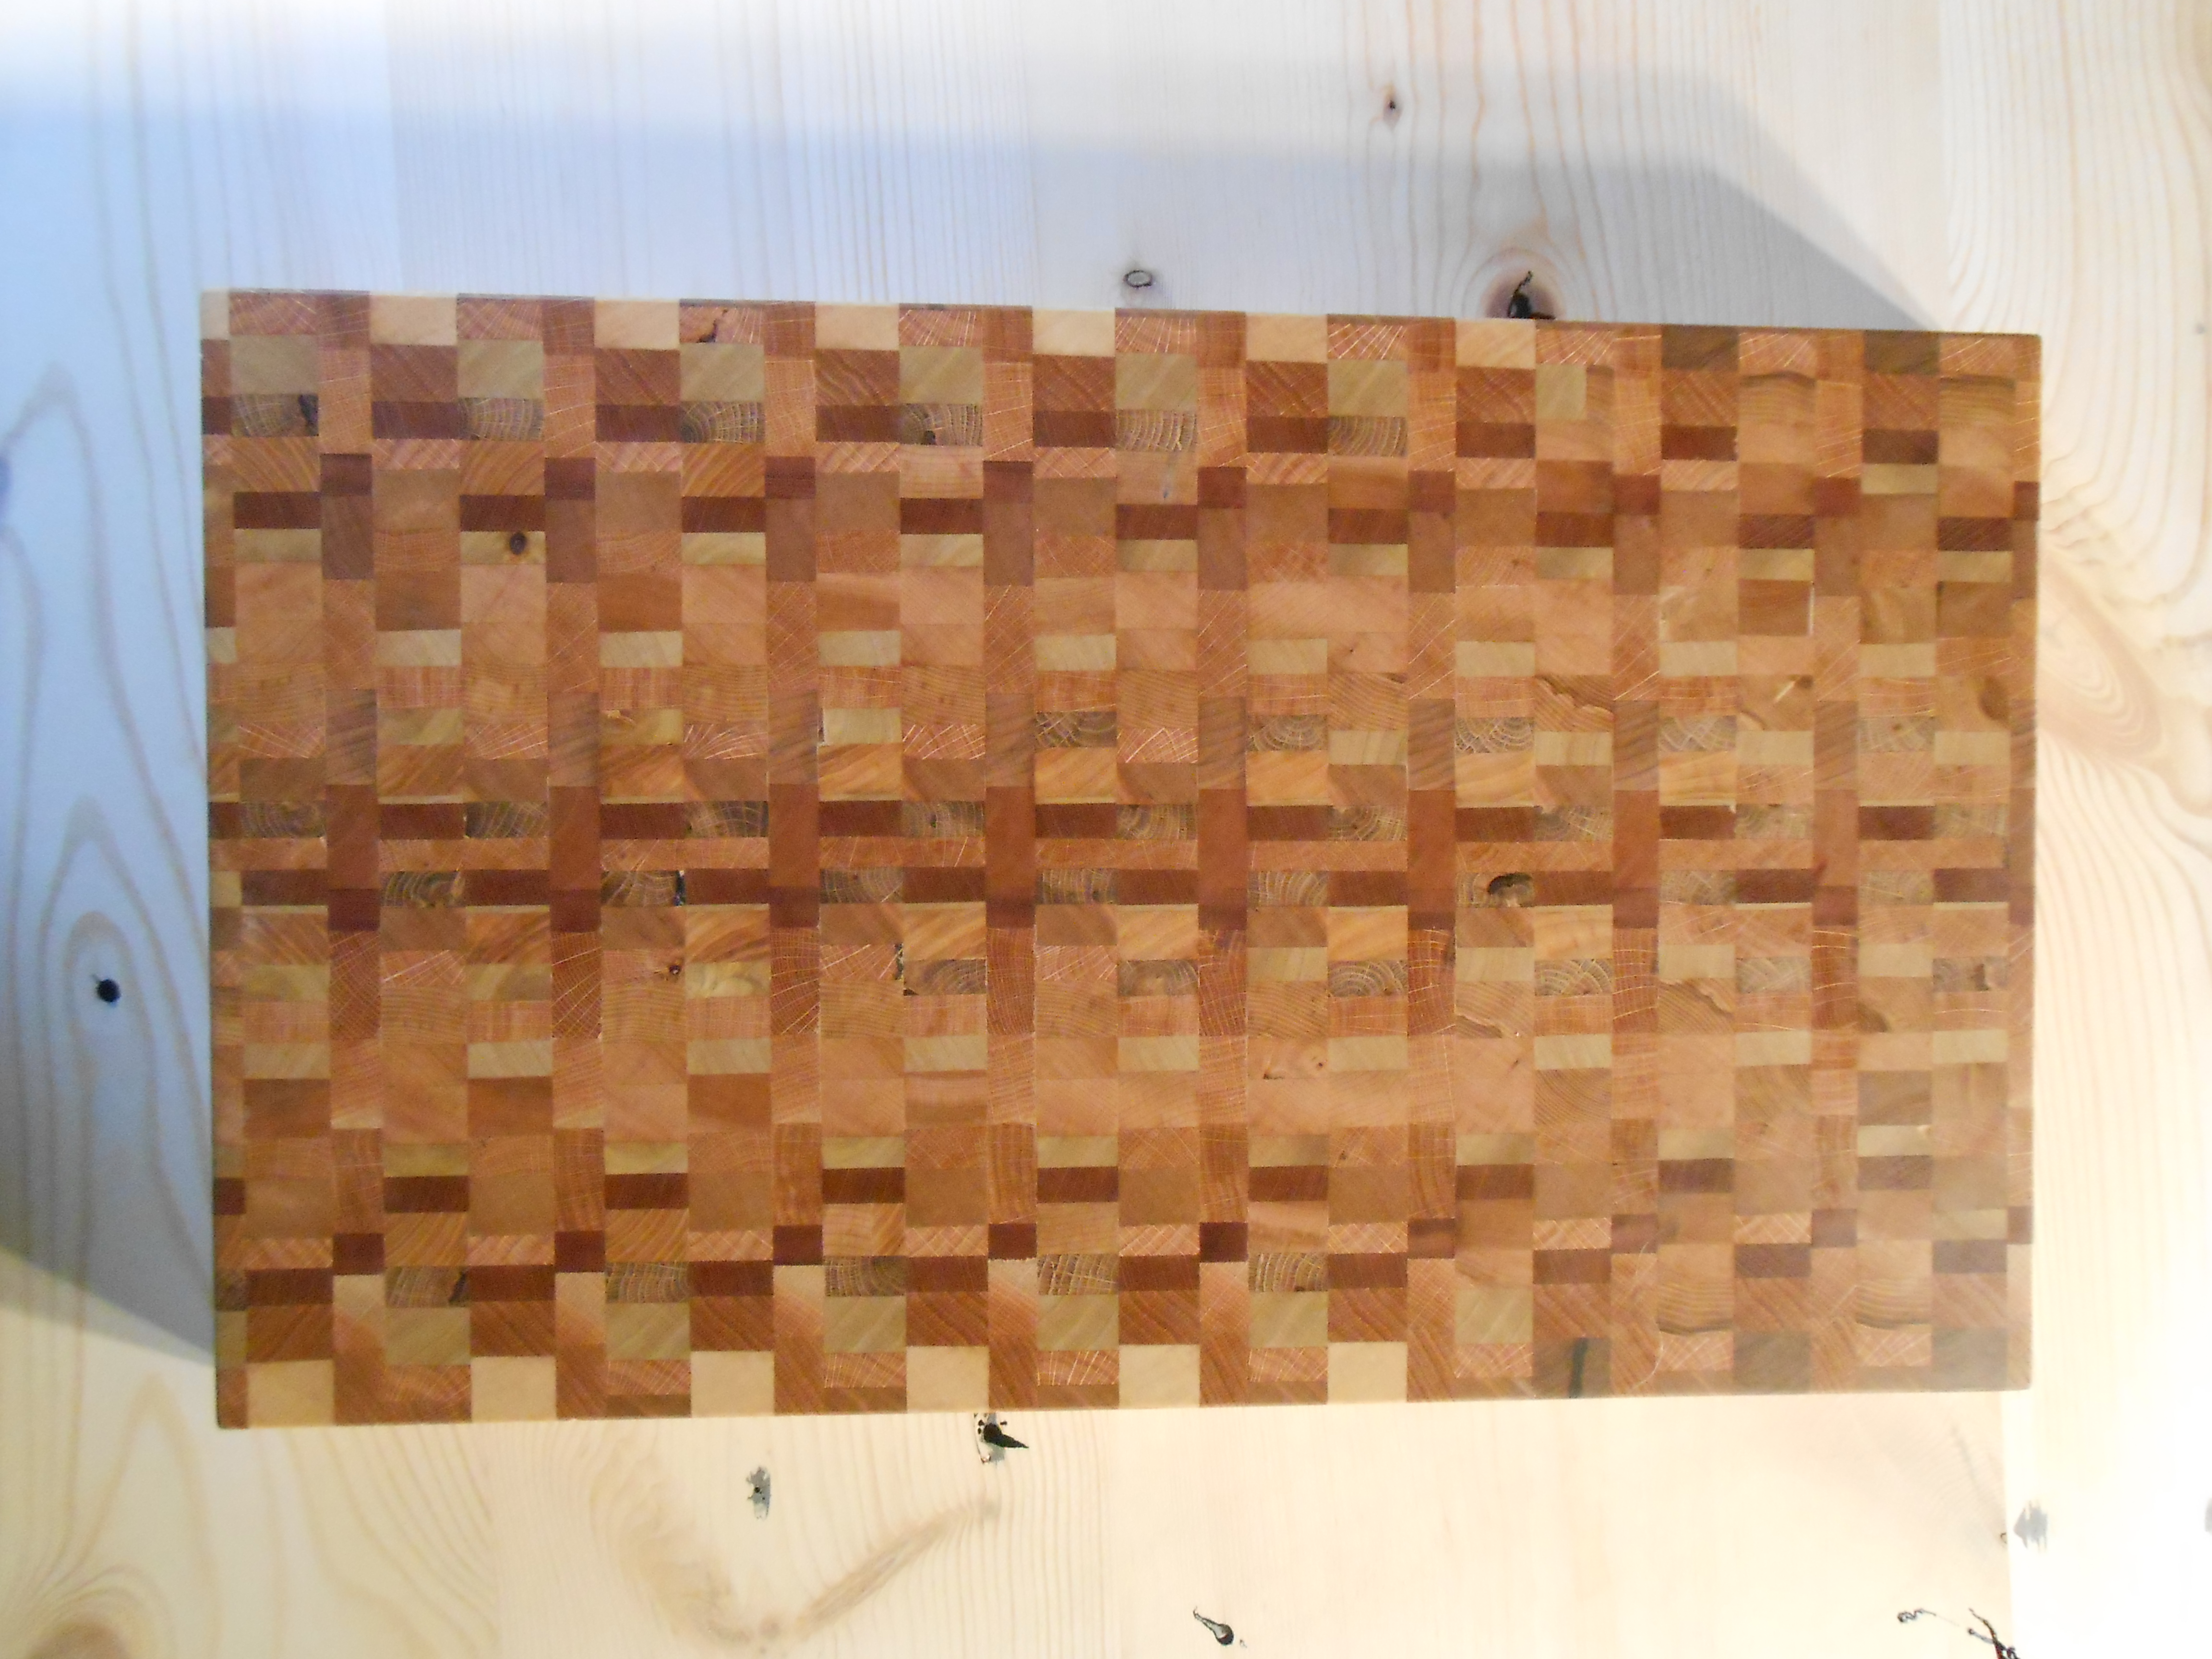 End Grain Wood Cutting Board